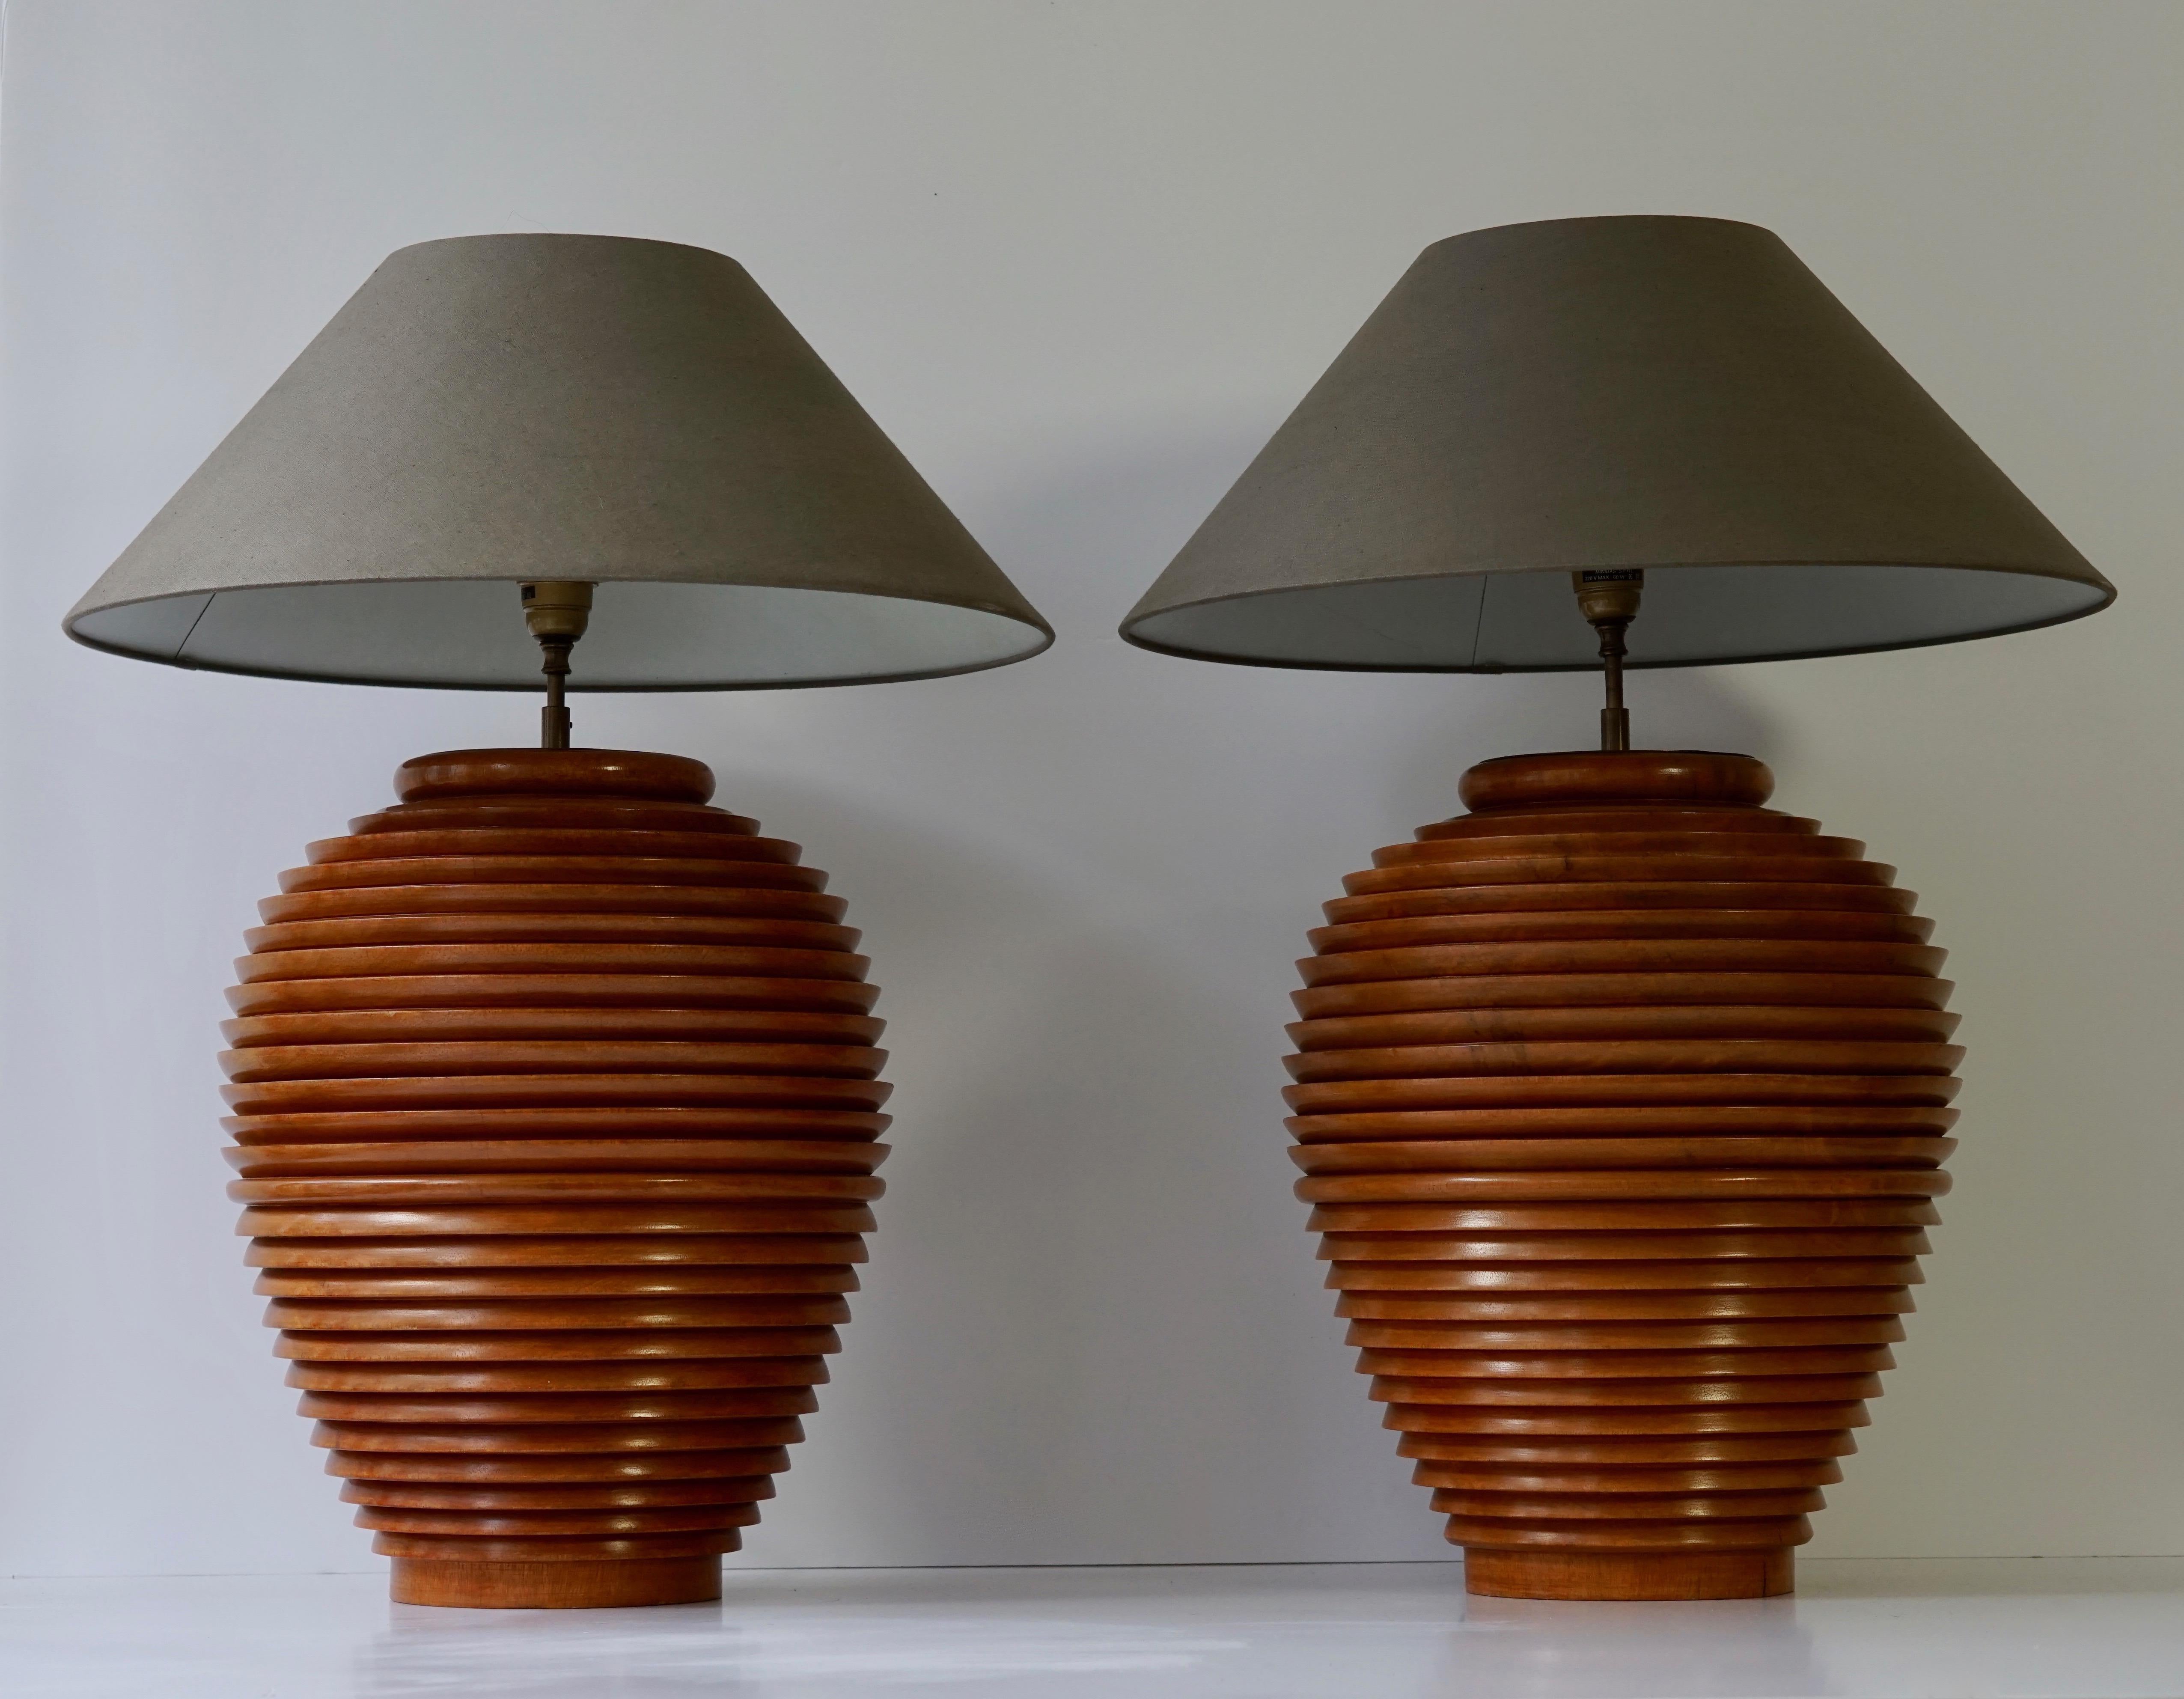 Un magnifique ancien pot à provisions en bois de Birmanie transformé en lampes dans les années 1970.
La lampe endommagée est toujours disponible à la vente.

Mesures : 
Diamètre de la base en bois 36 cm.
Hauteur de la base sans socle 46 cm.

Les